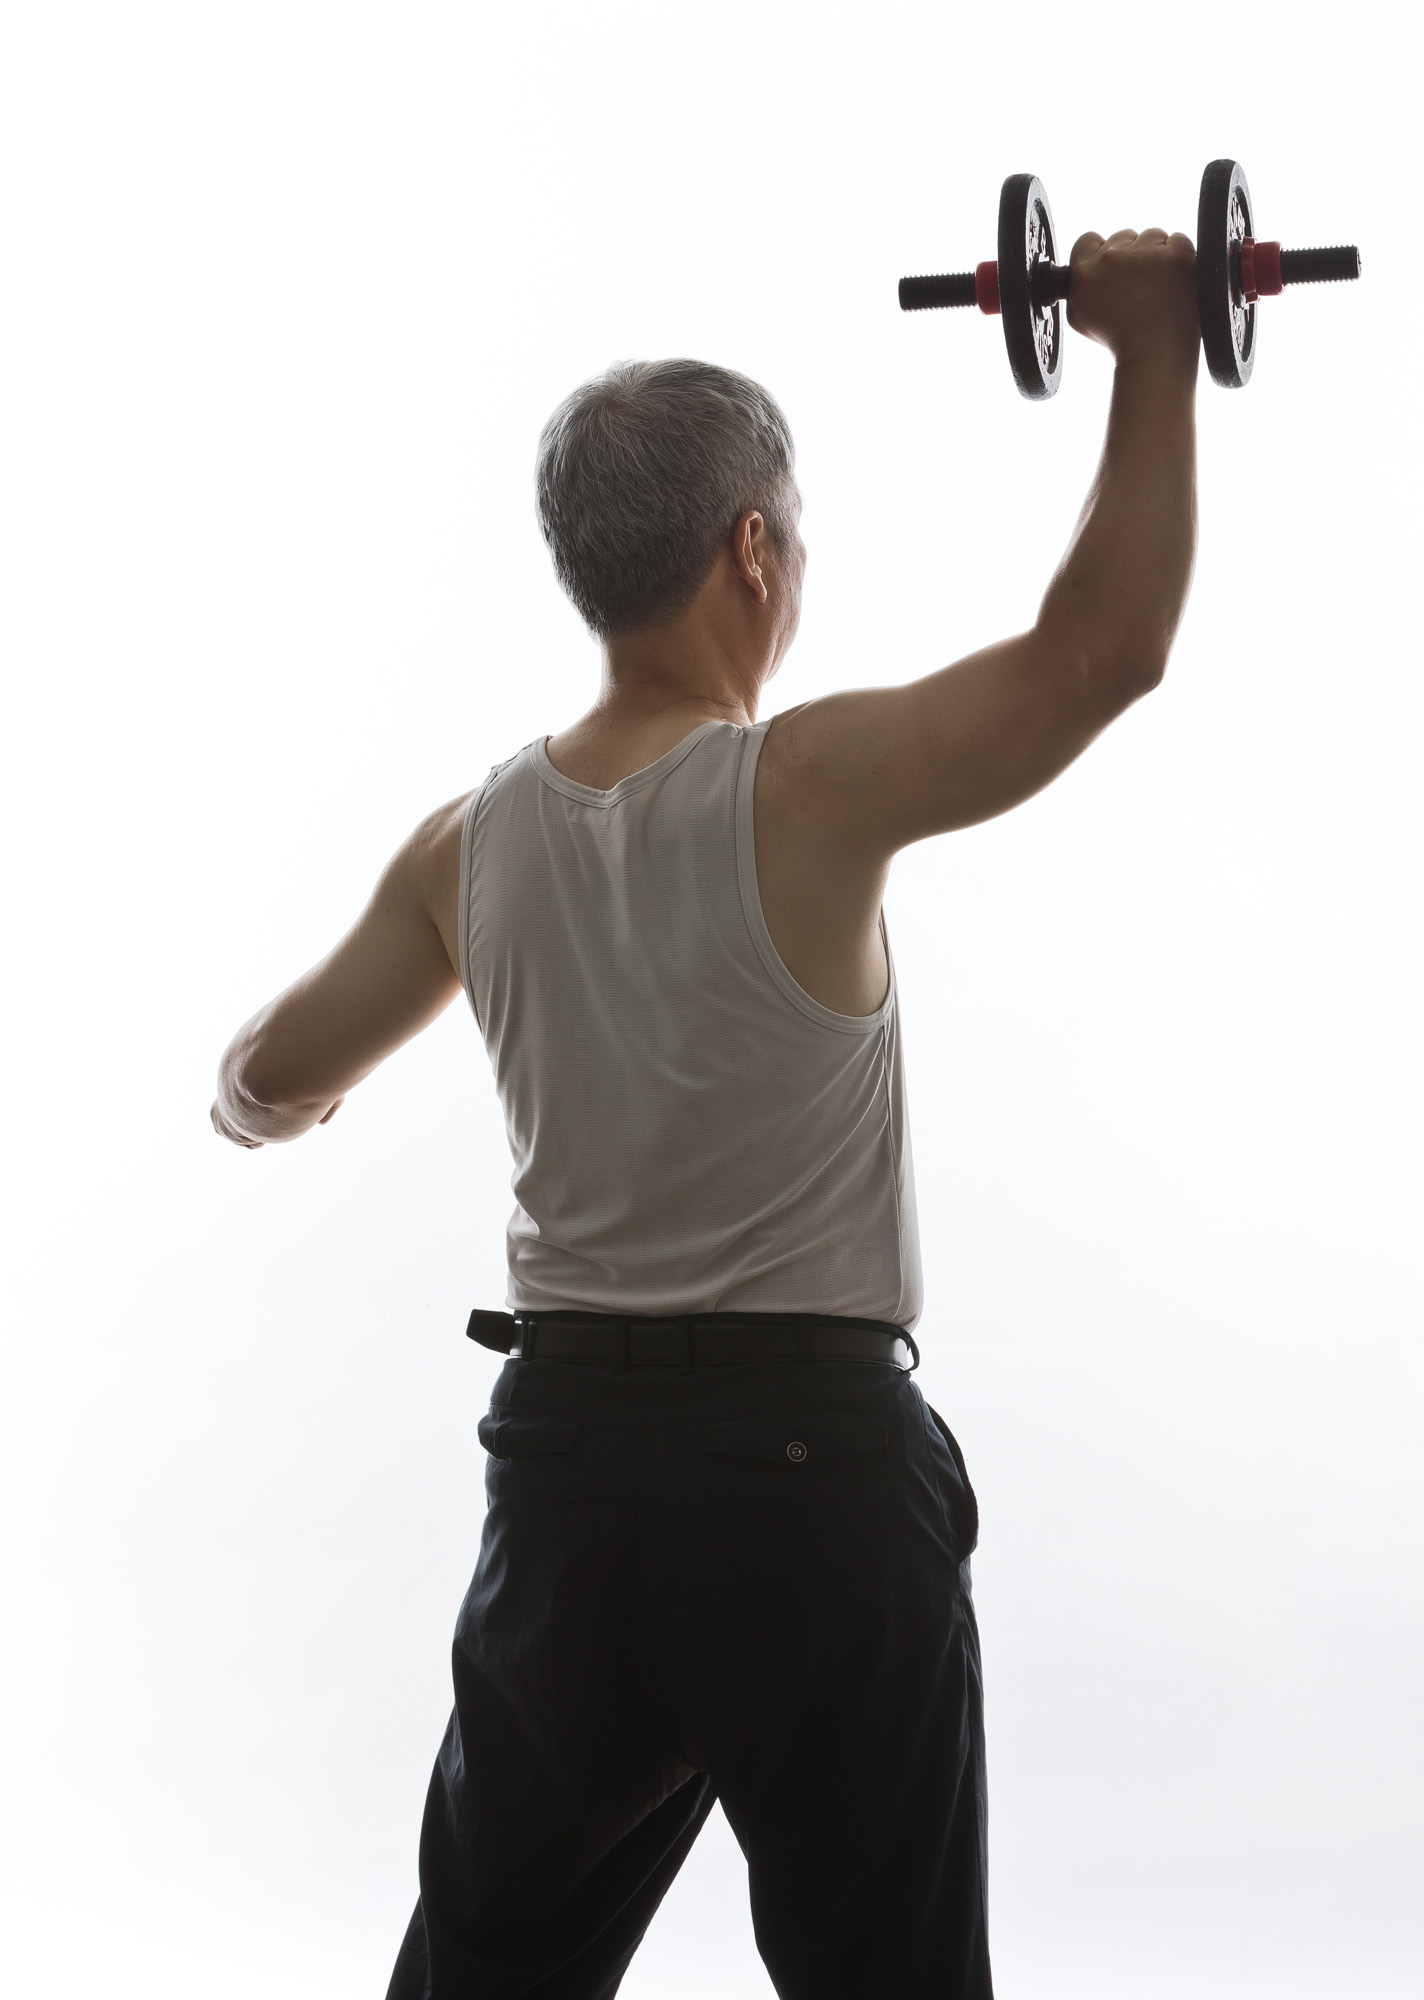 건강;운동;운동이미지컷;근력운동;중년근력운동